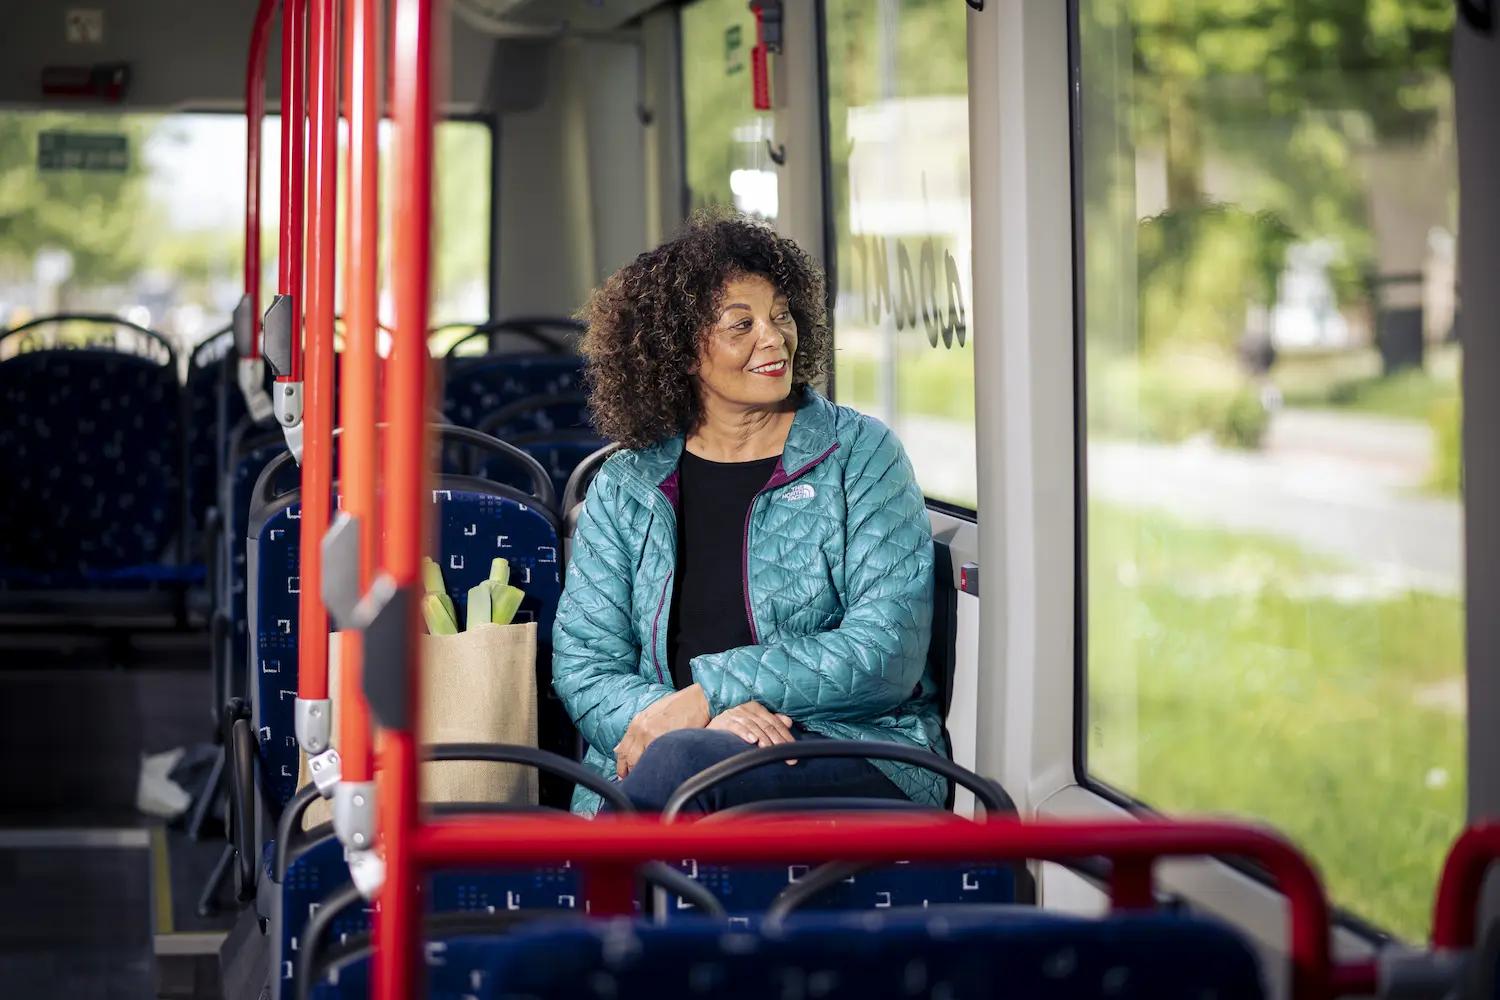 Ontdek reizen met de bus met glimble zelf. Combineer je busreis met ander OV en deelvervoer.